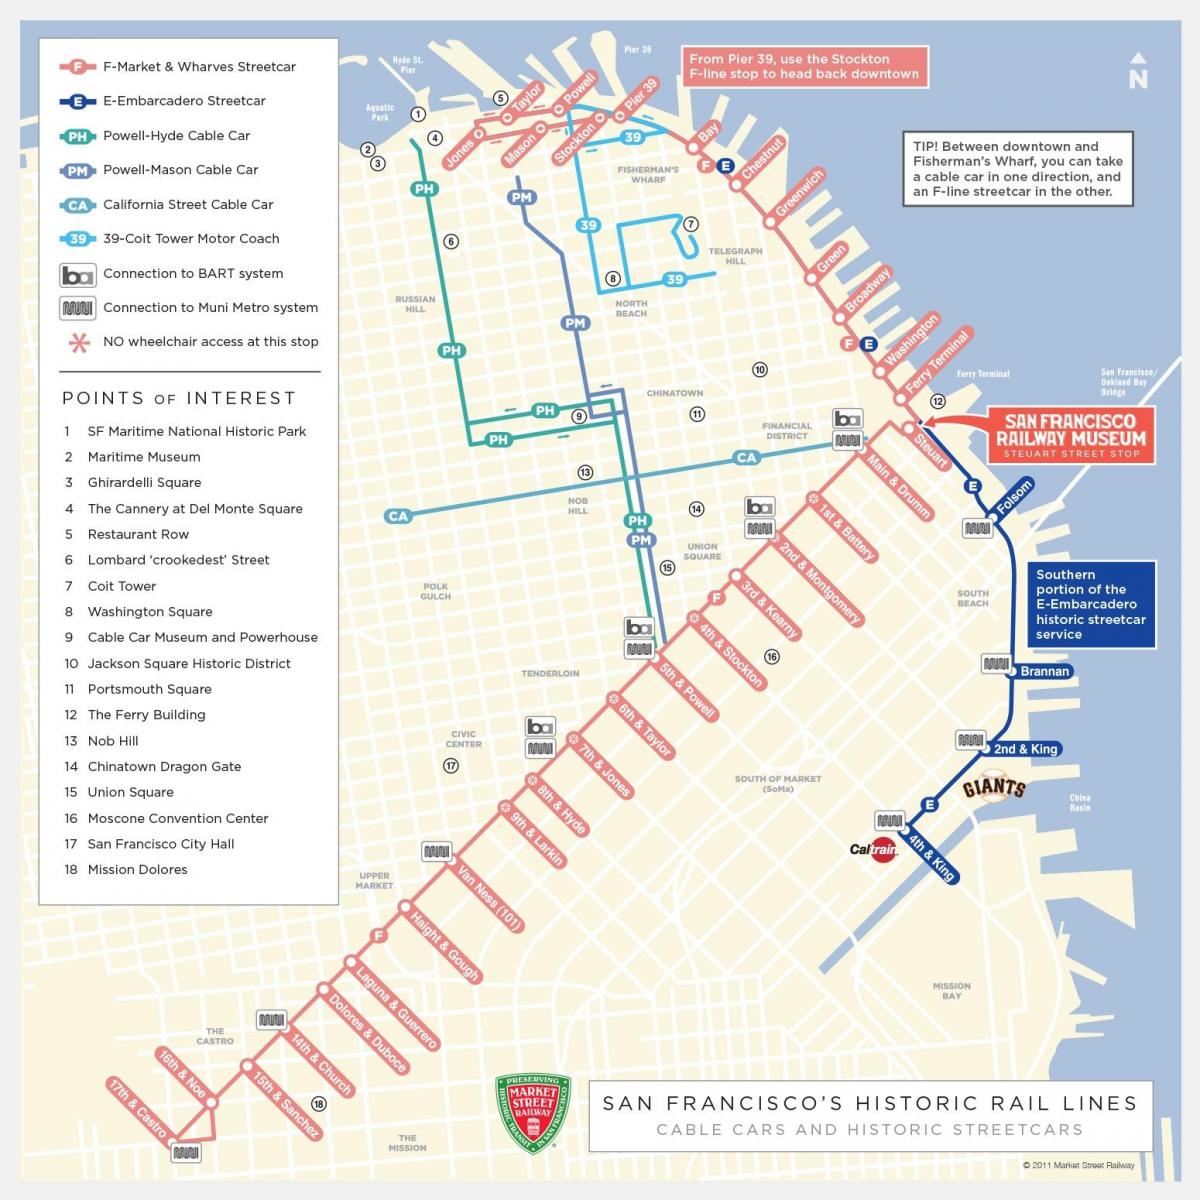 Kort over San Francisco oplysninger